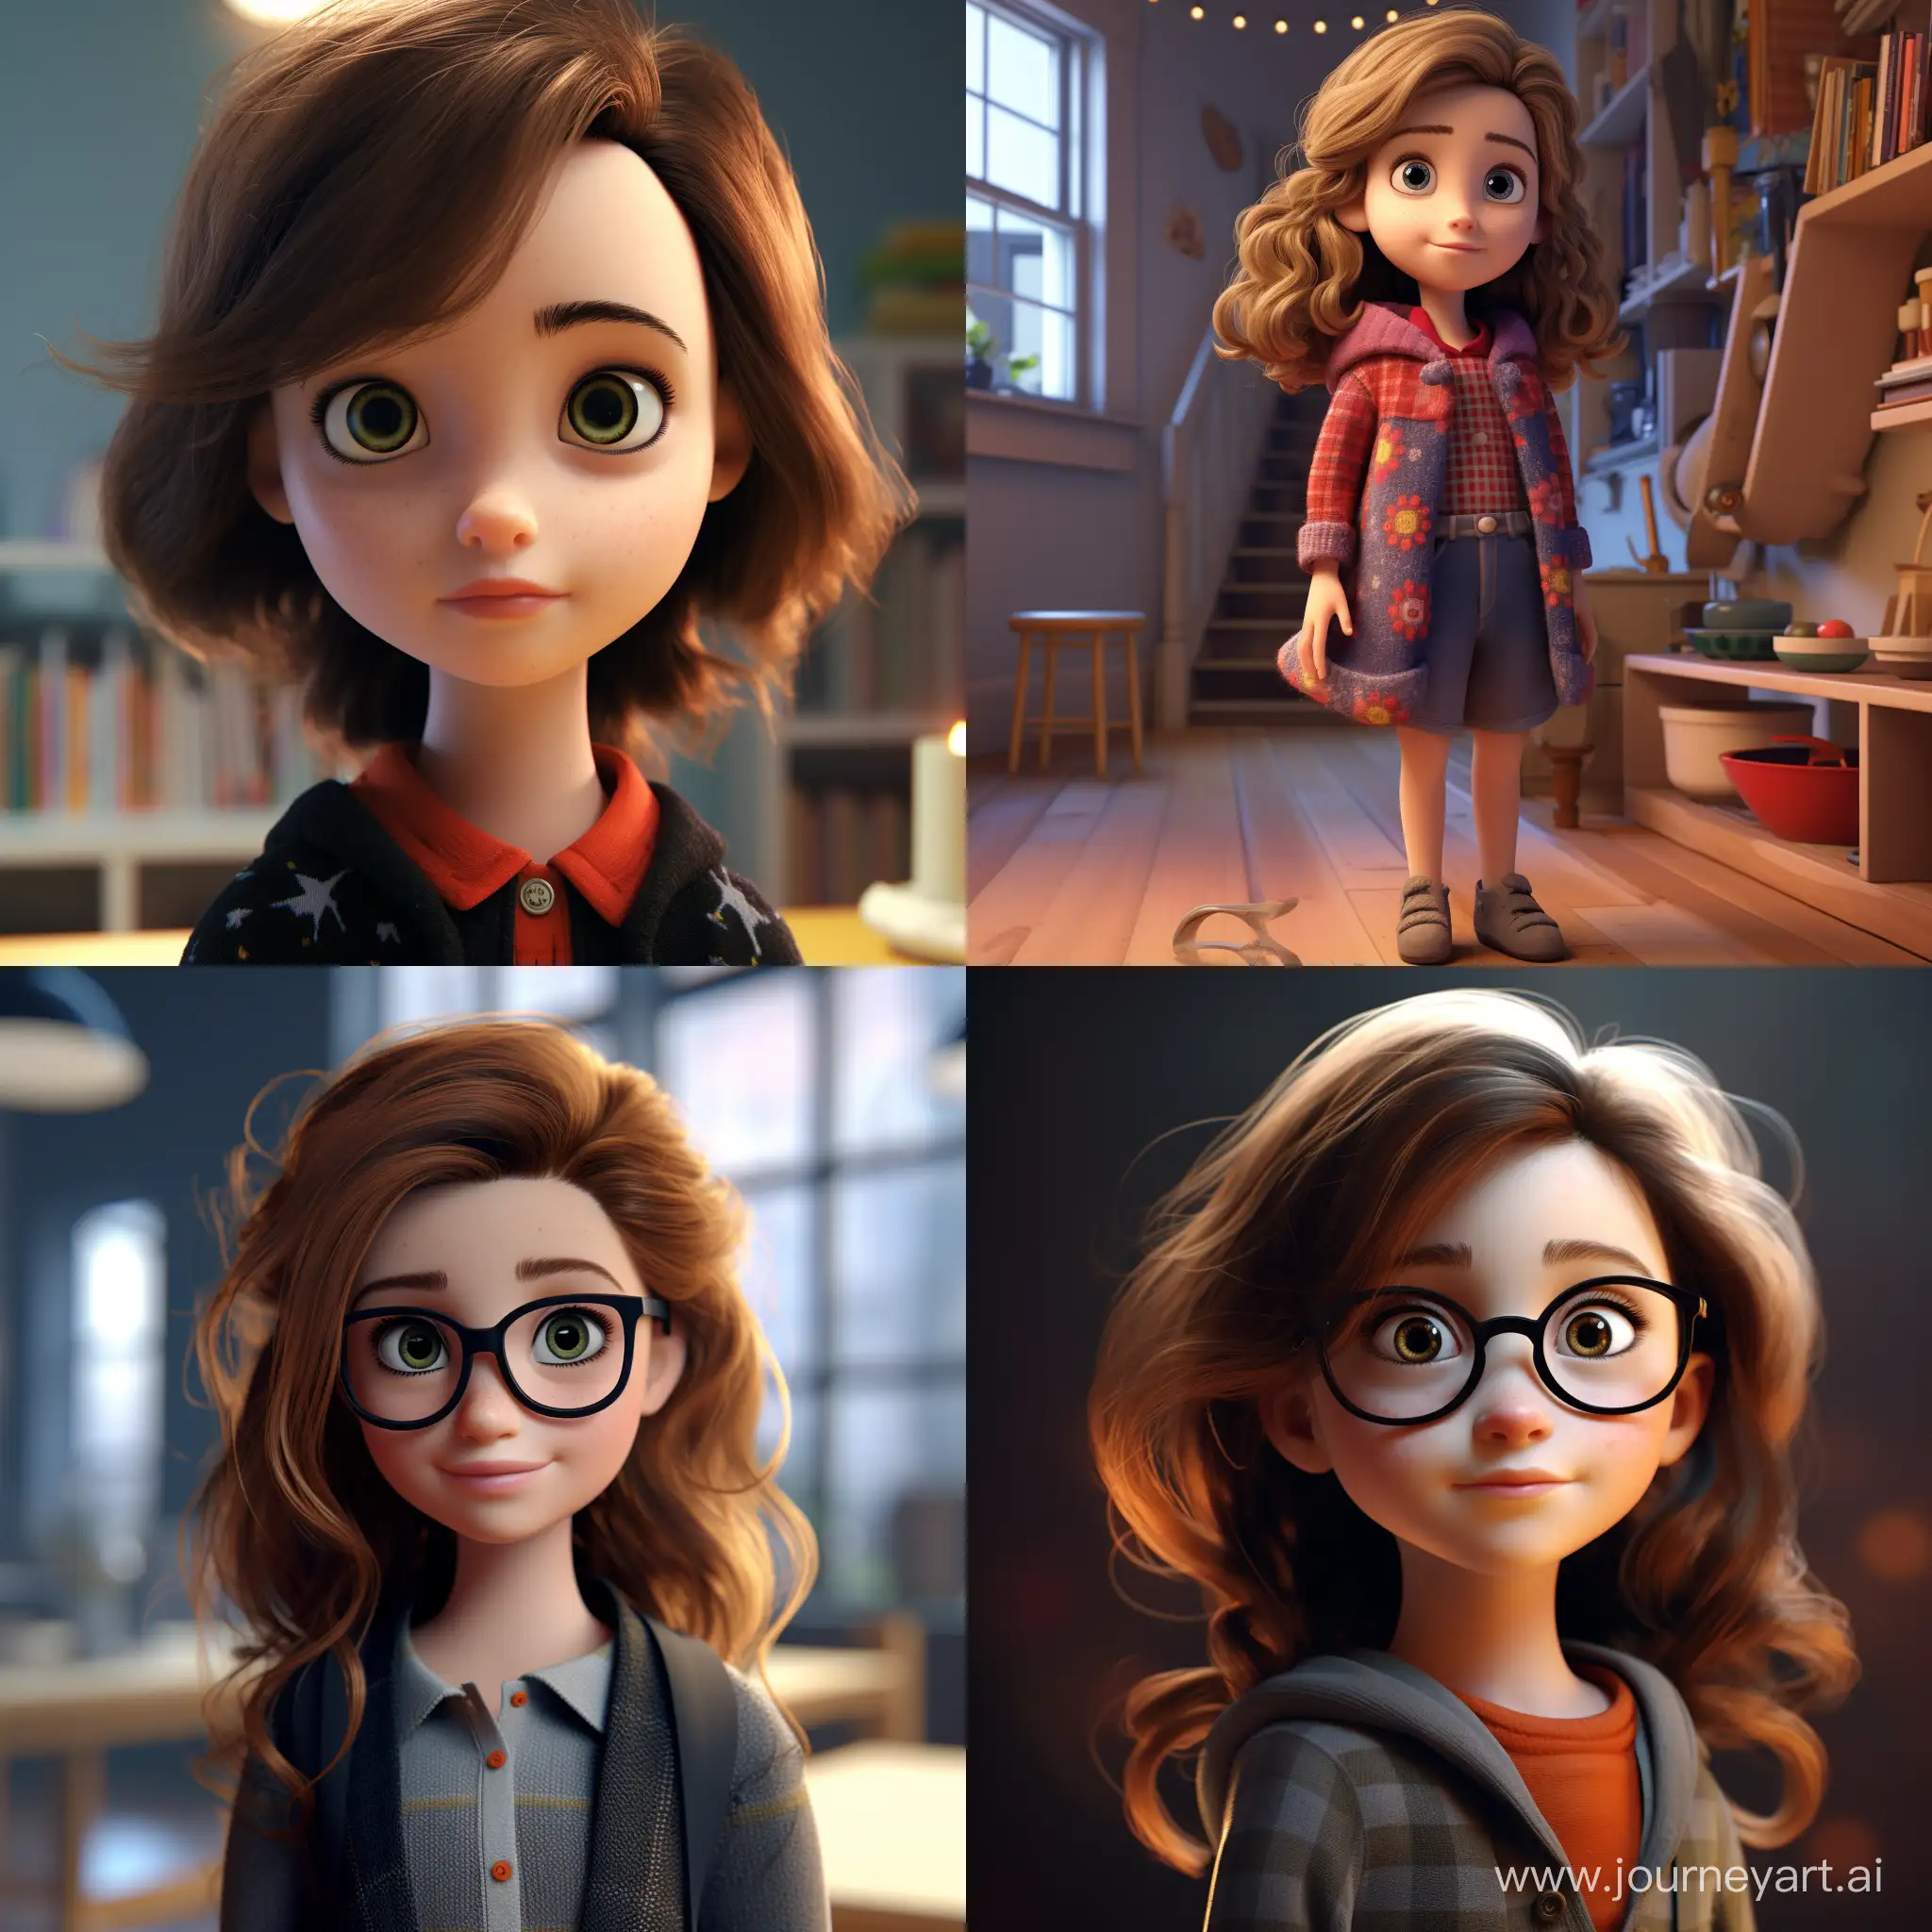 Adorable-3D-Pixar-Girl-with-AR-Technology